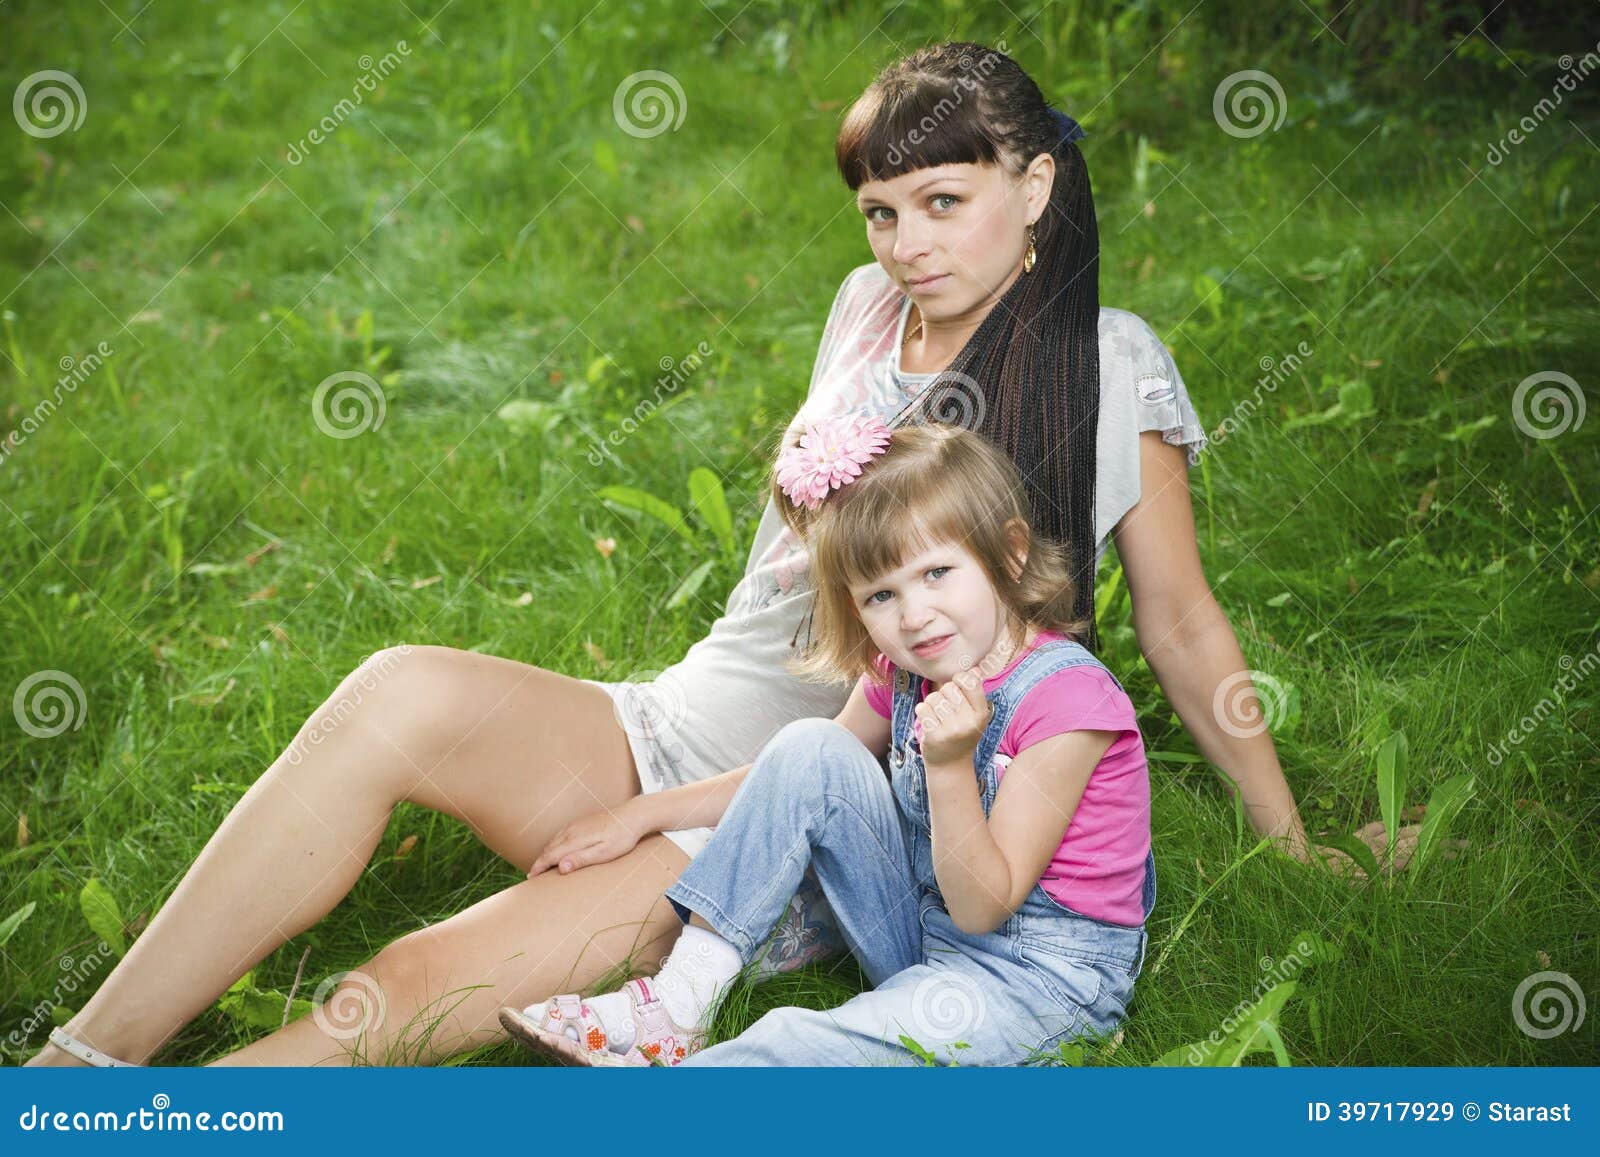 эротика русская при детях фото 99